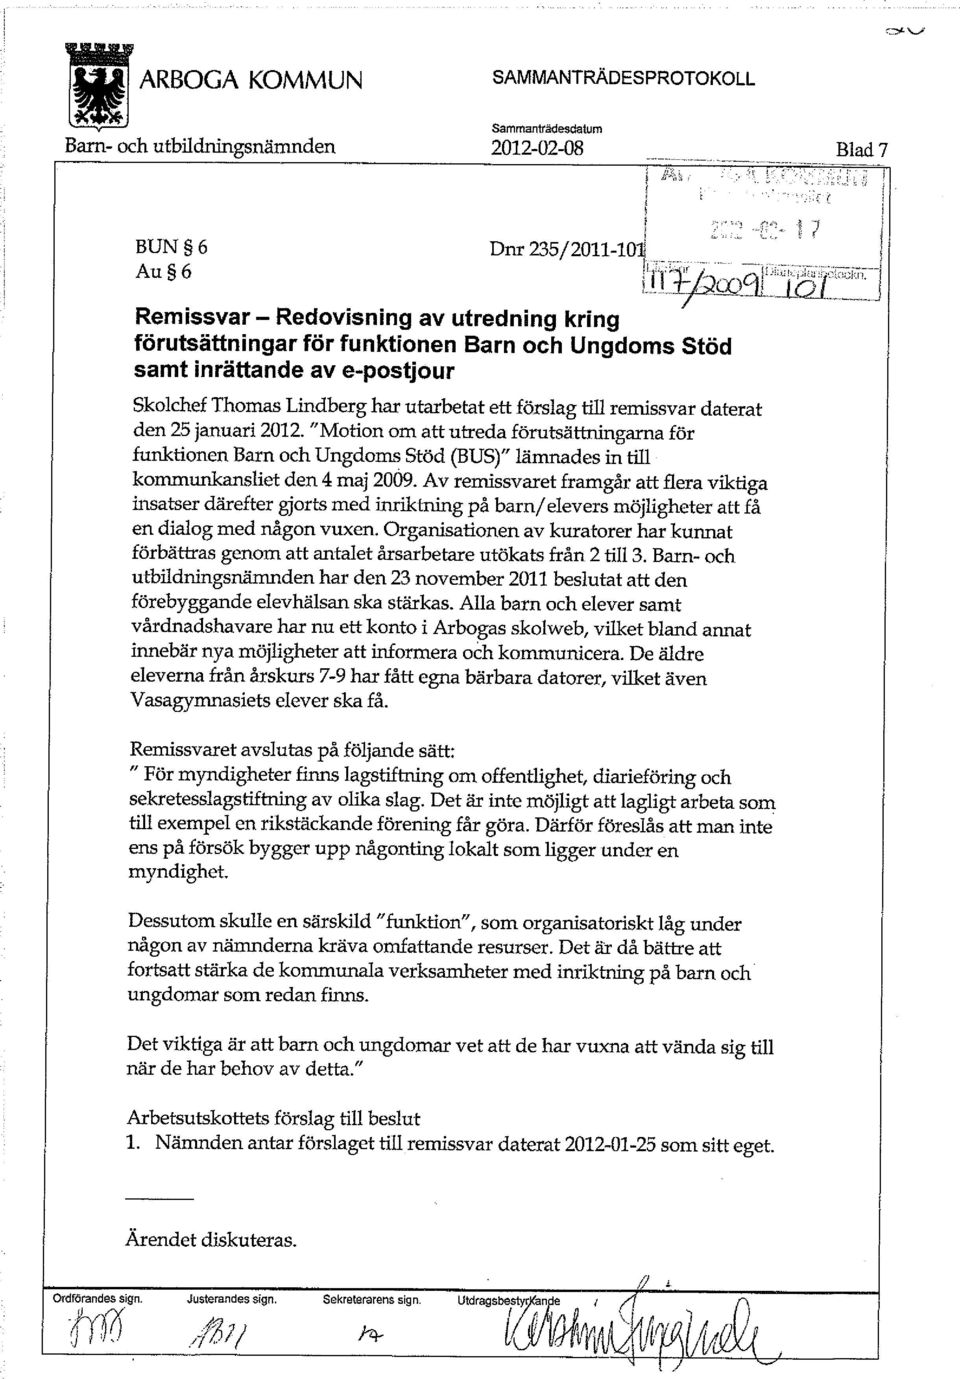 "Motion om att utreda förutsättningarna för funktionen Barn och Ungdoms Stöd (BUS)" lämnades in till kommunkansliet den 4 maj 2009.